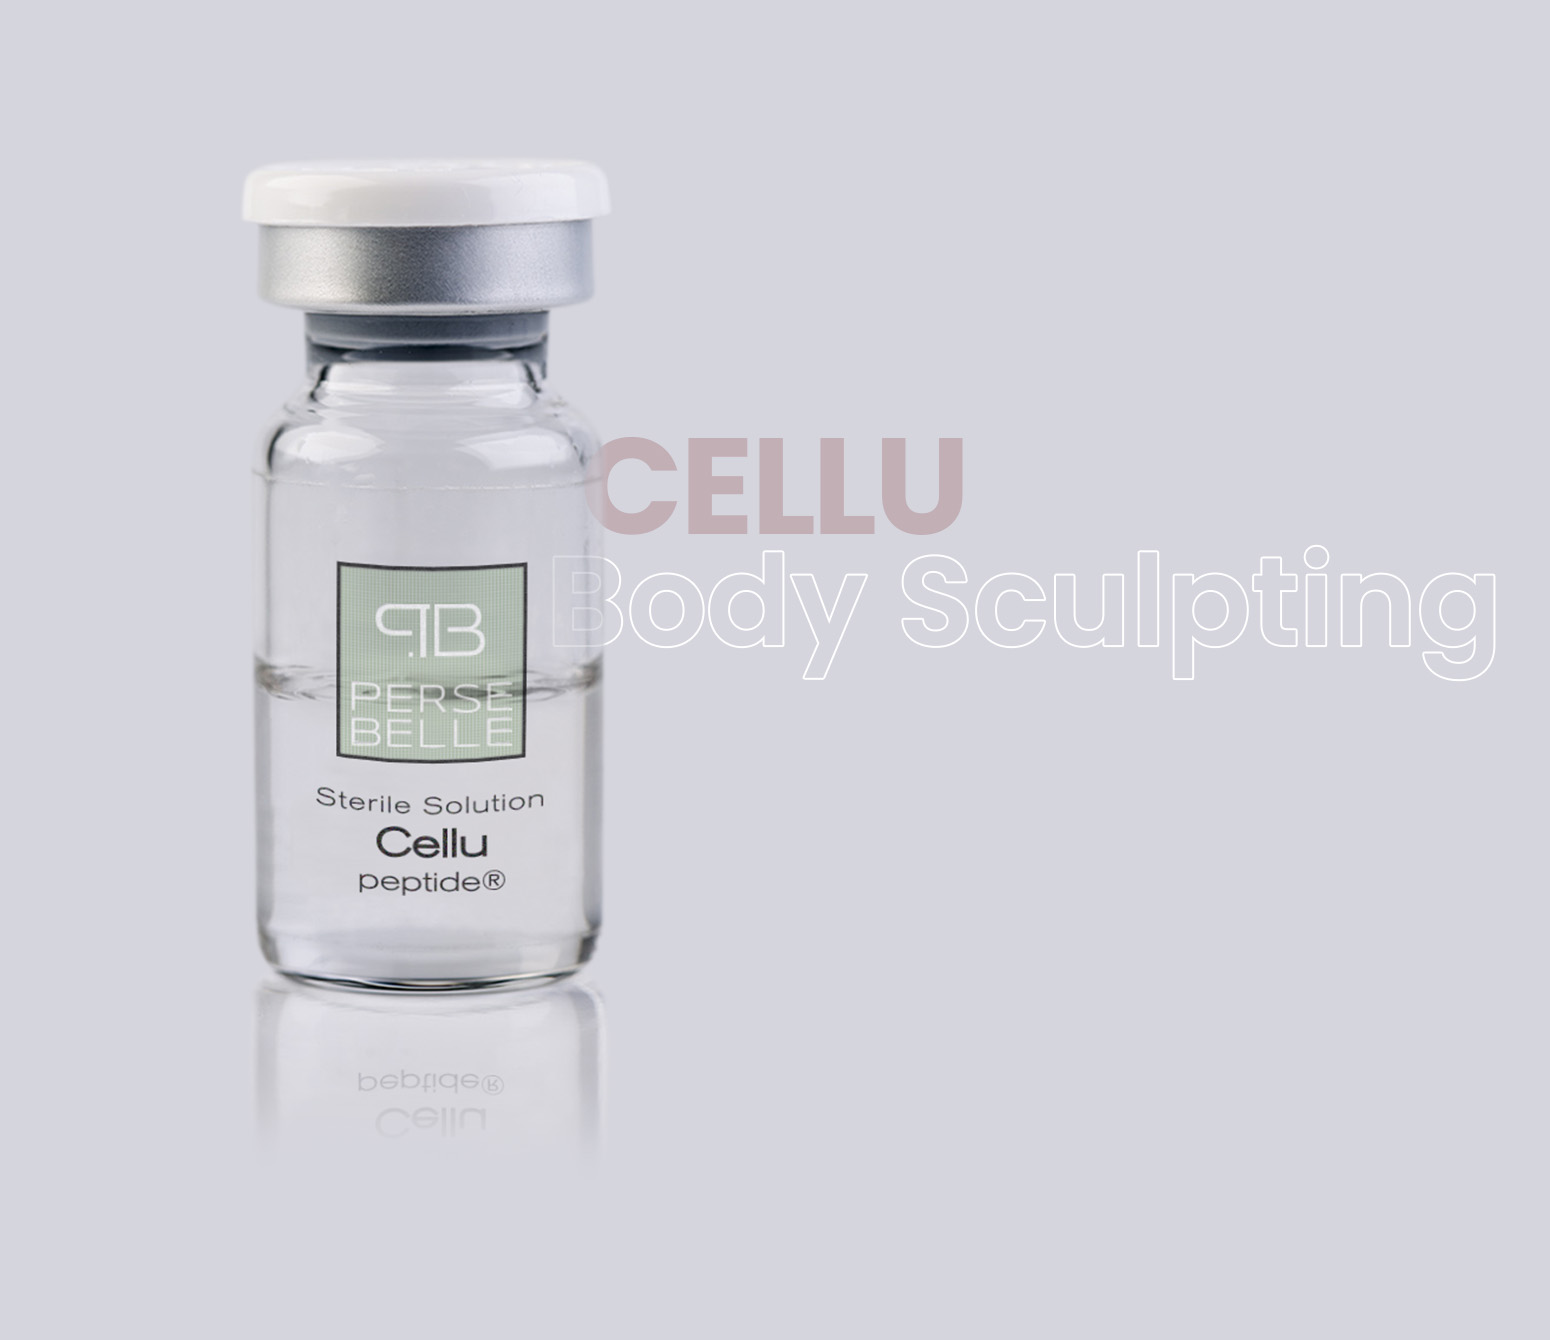 Tratamiento para la celulitis, productos para profesionales - Persebelle